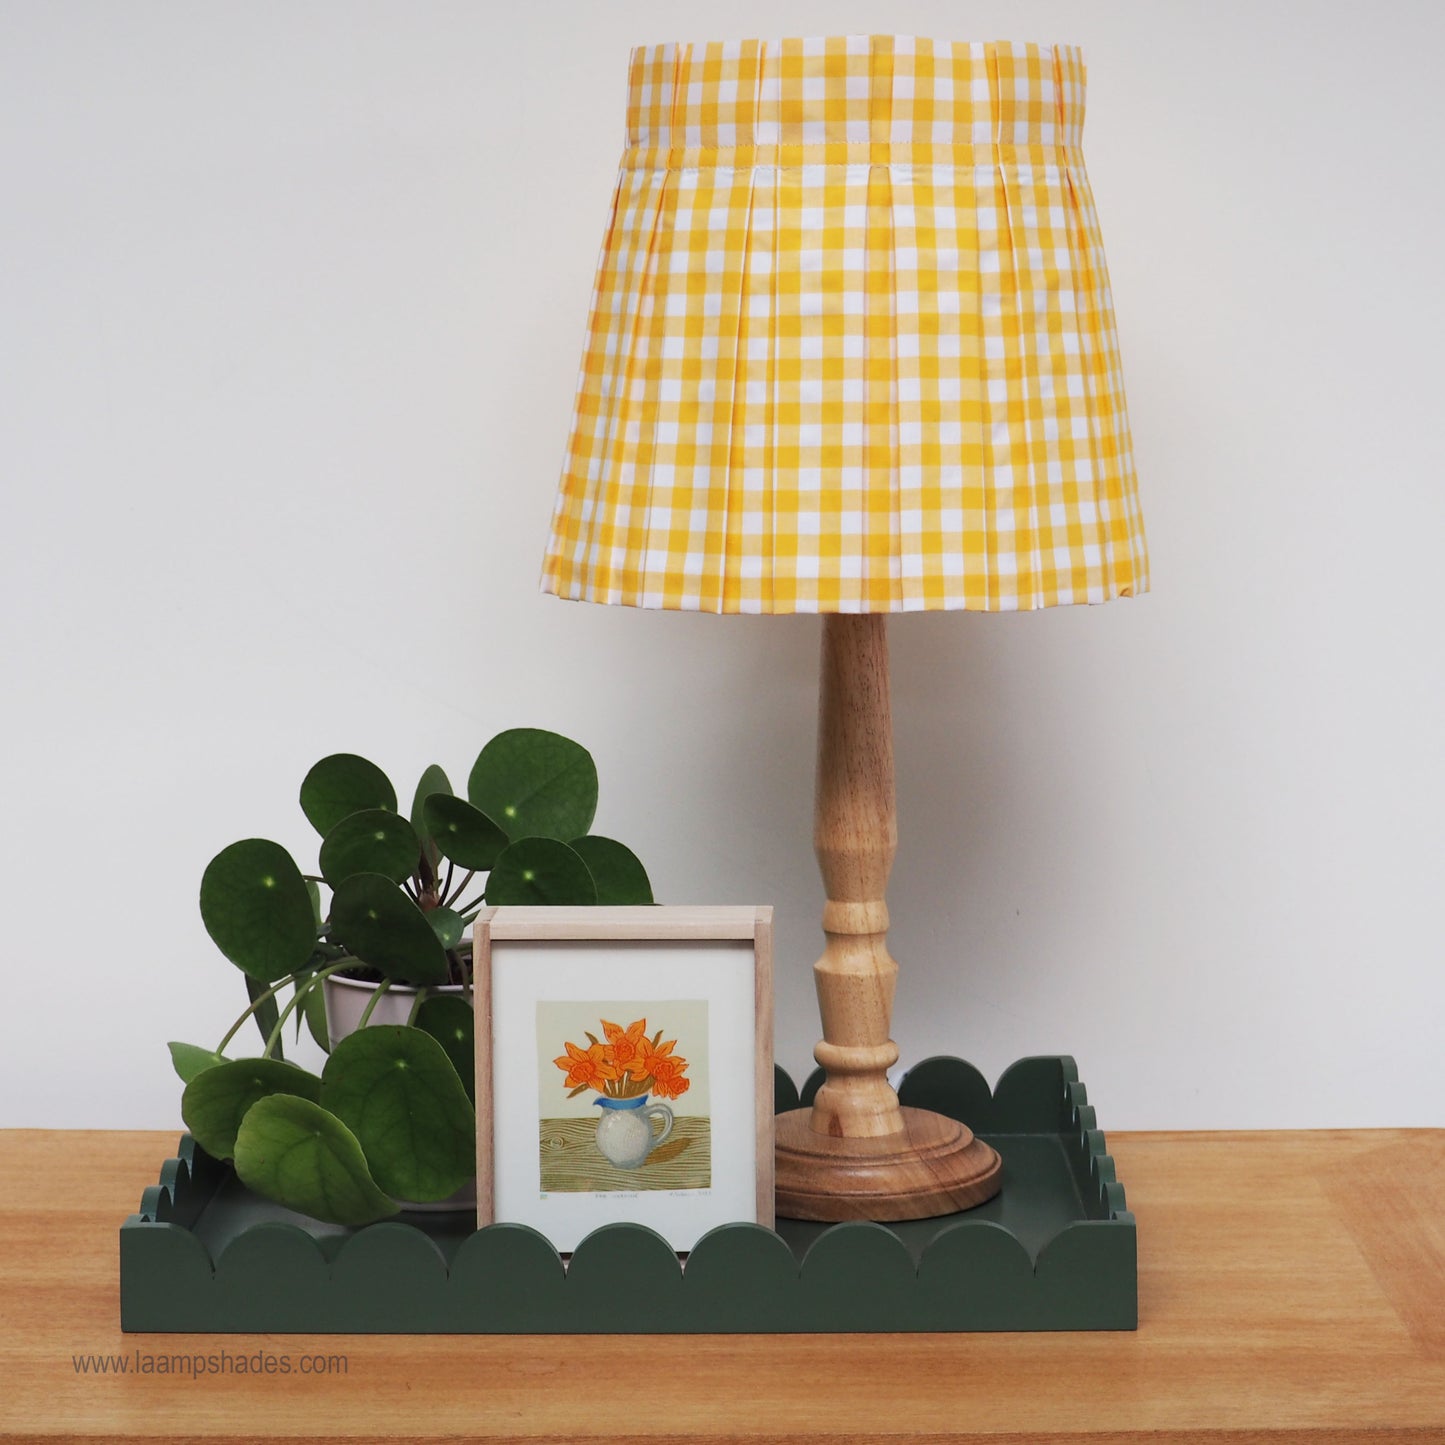 MEDIUM box pleat yellow gingham fabric lampshade